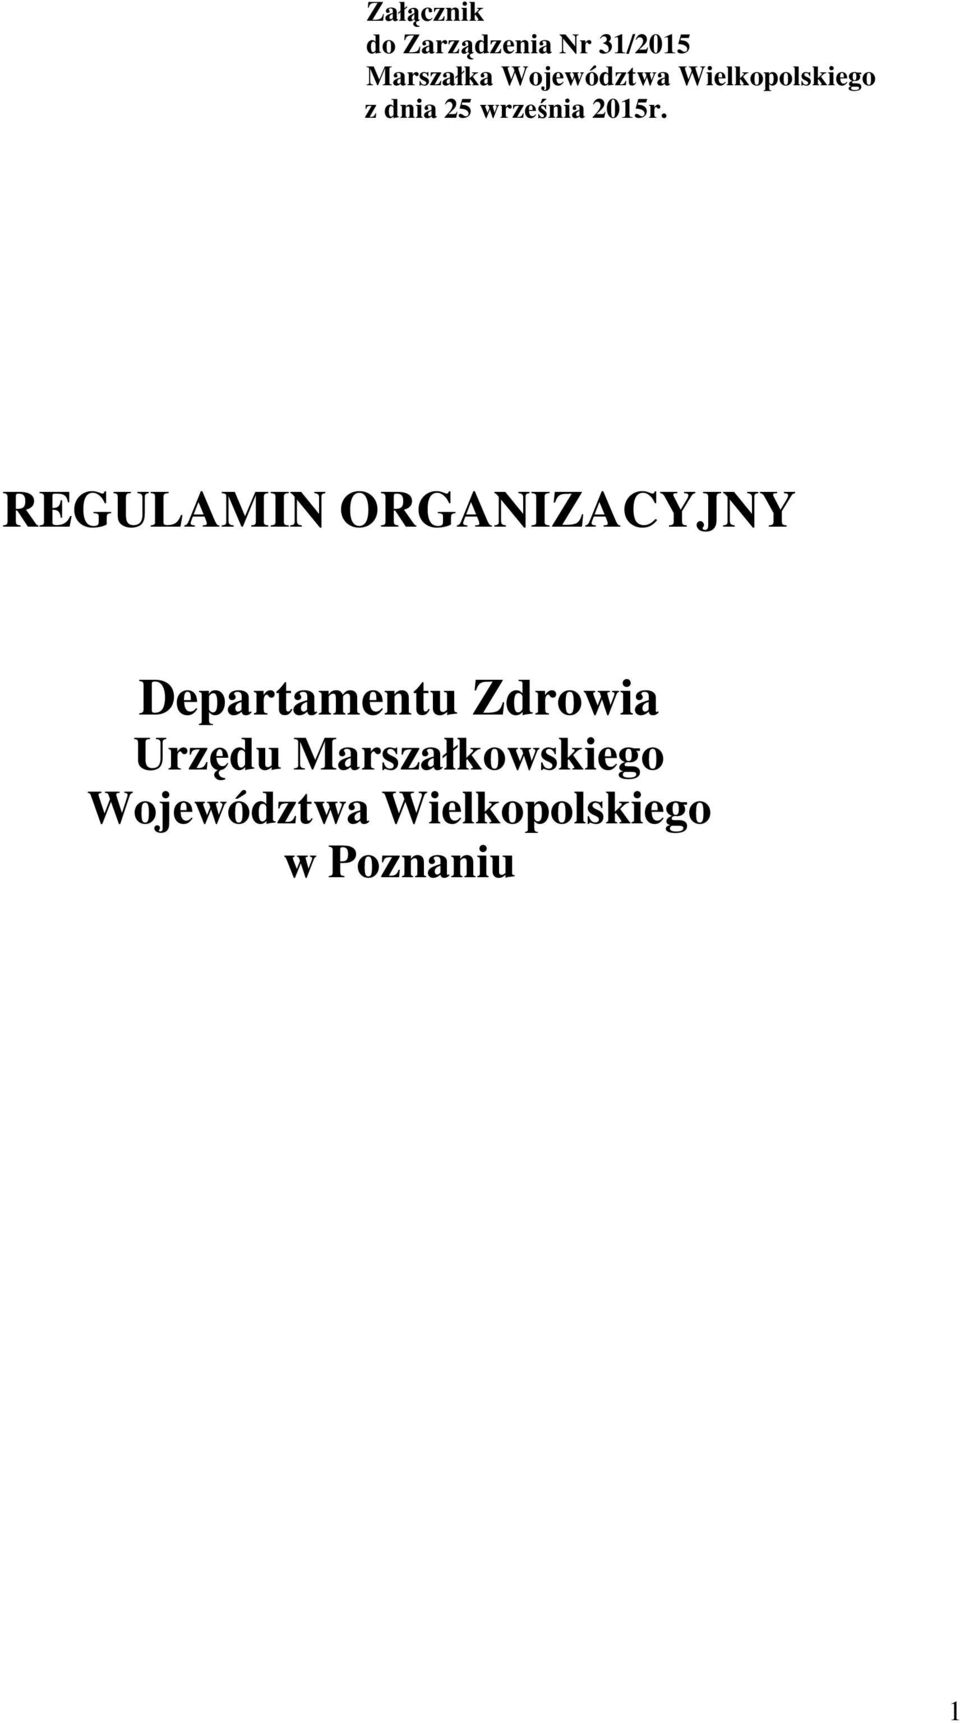 REGULAMIN ORGANIZACYJNY Departamentu Zdrowia Urzędu